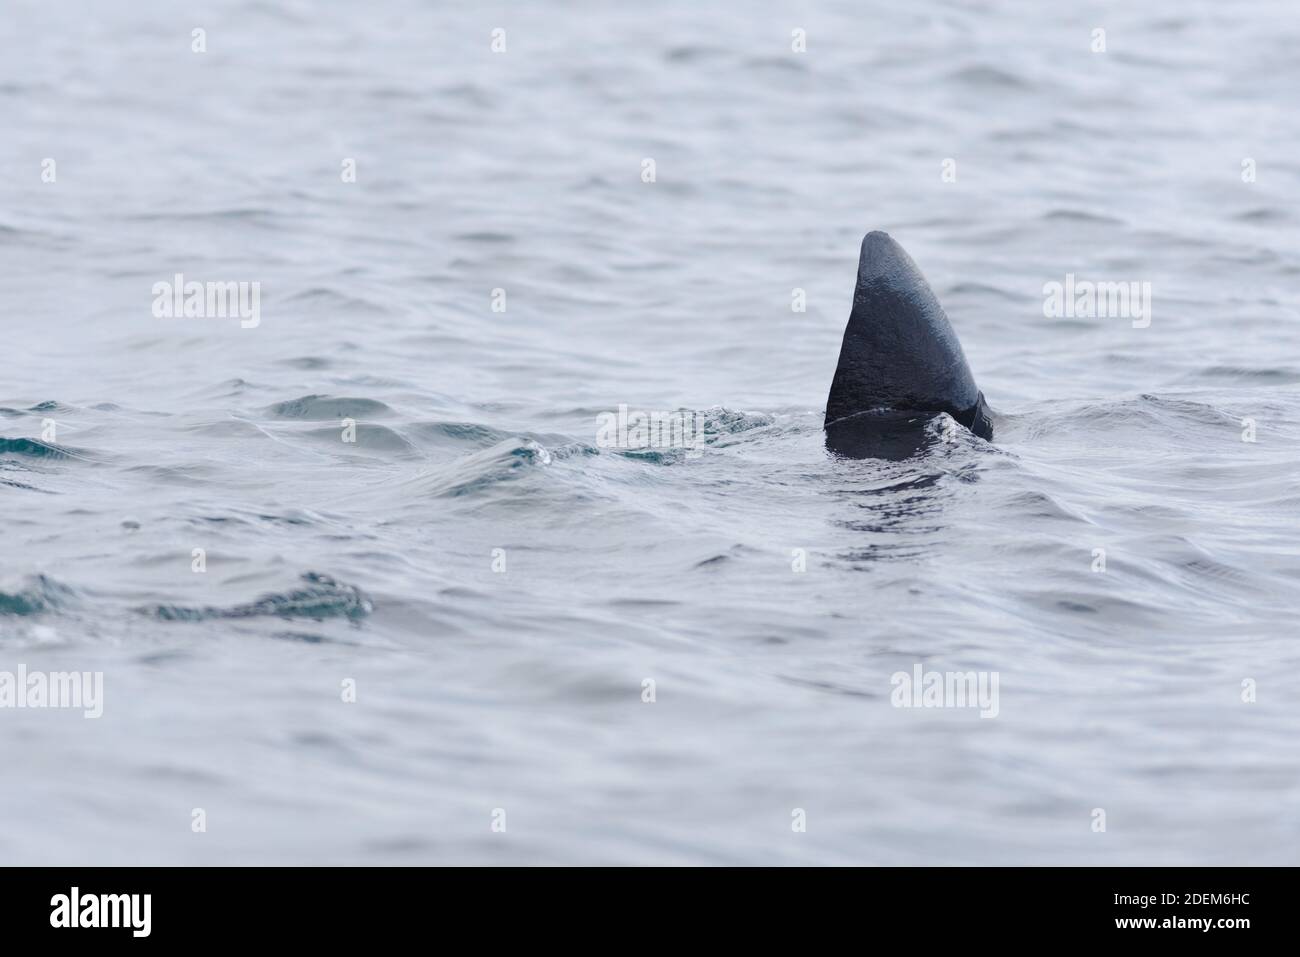 3 - image nette de la nageoire dorsale noire sombre d'un requin pèlerin nageant hors du cadre. Le requin se démarque par son arrière-plan d'eau rippé et Uni. Banque D'Images